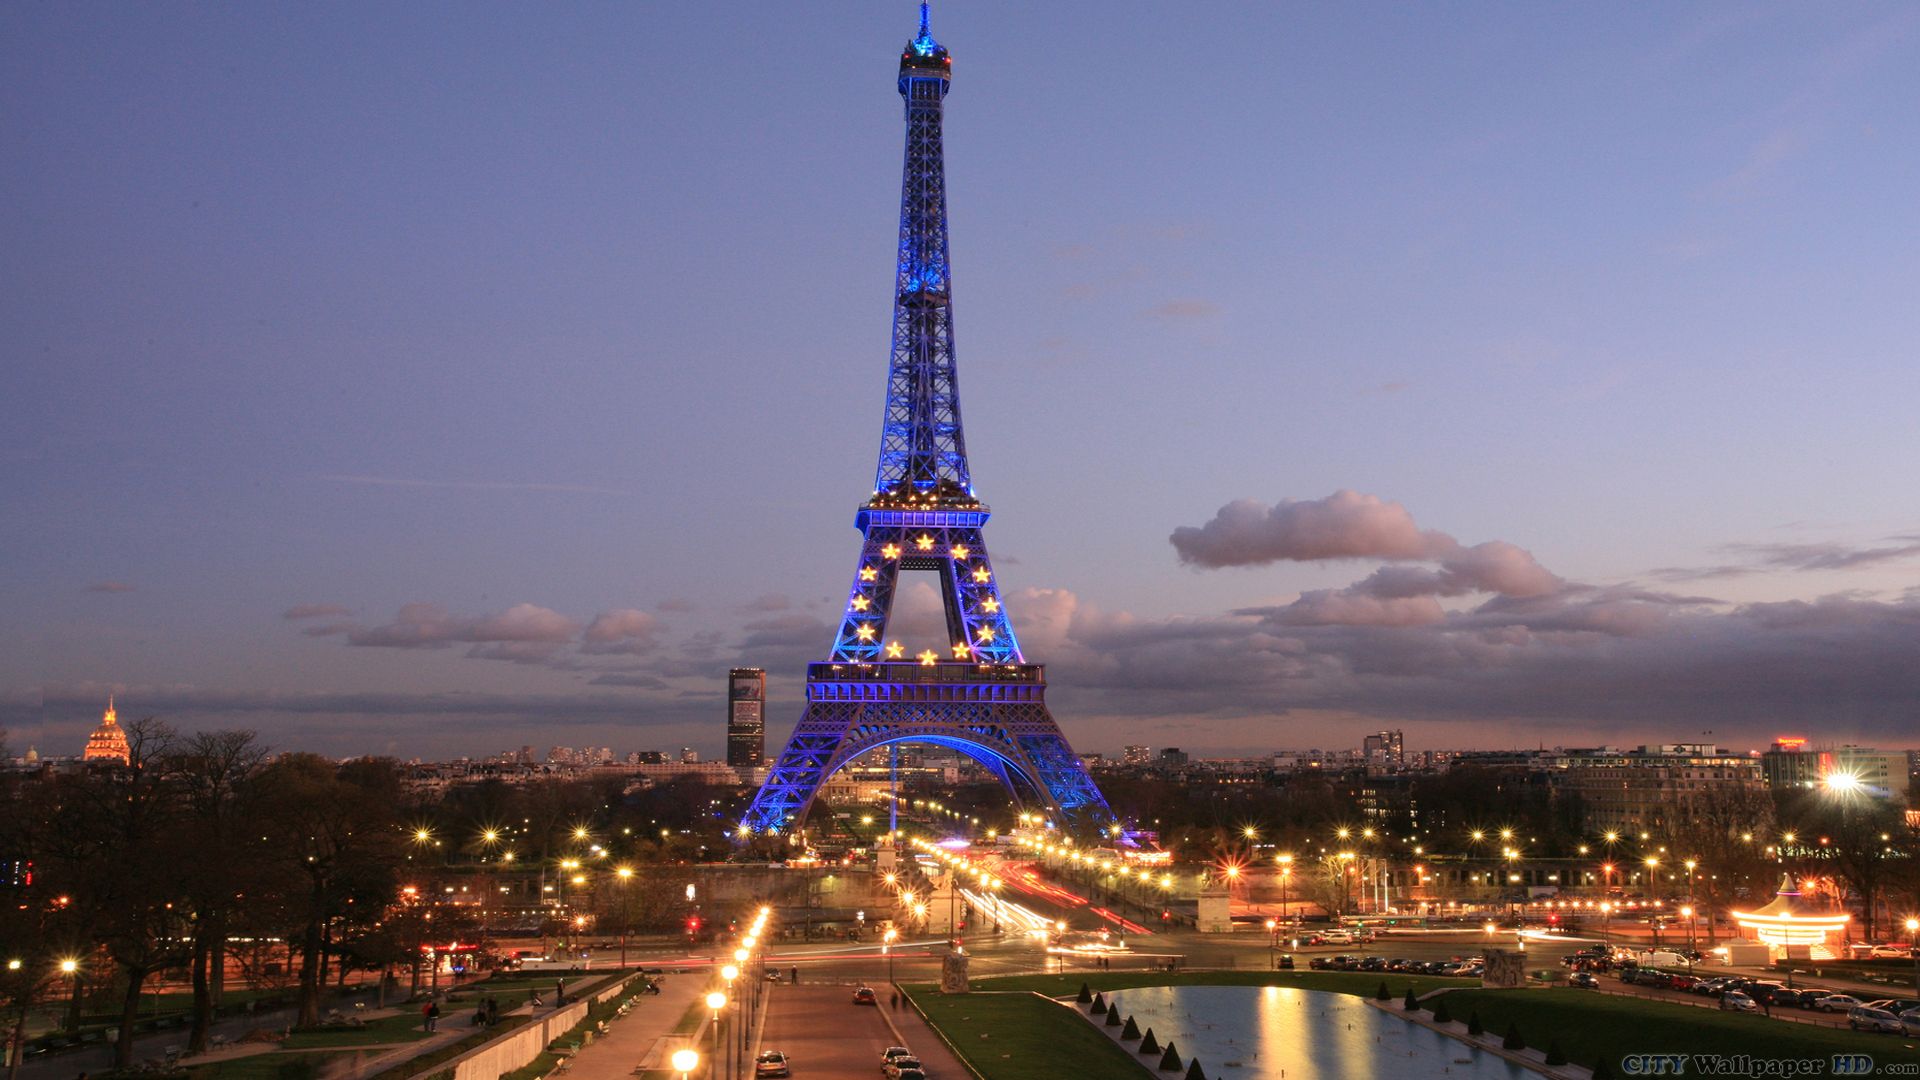 Impresionante imagen de alta resolución, brillante del papel pintado de la  noche en París.